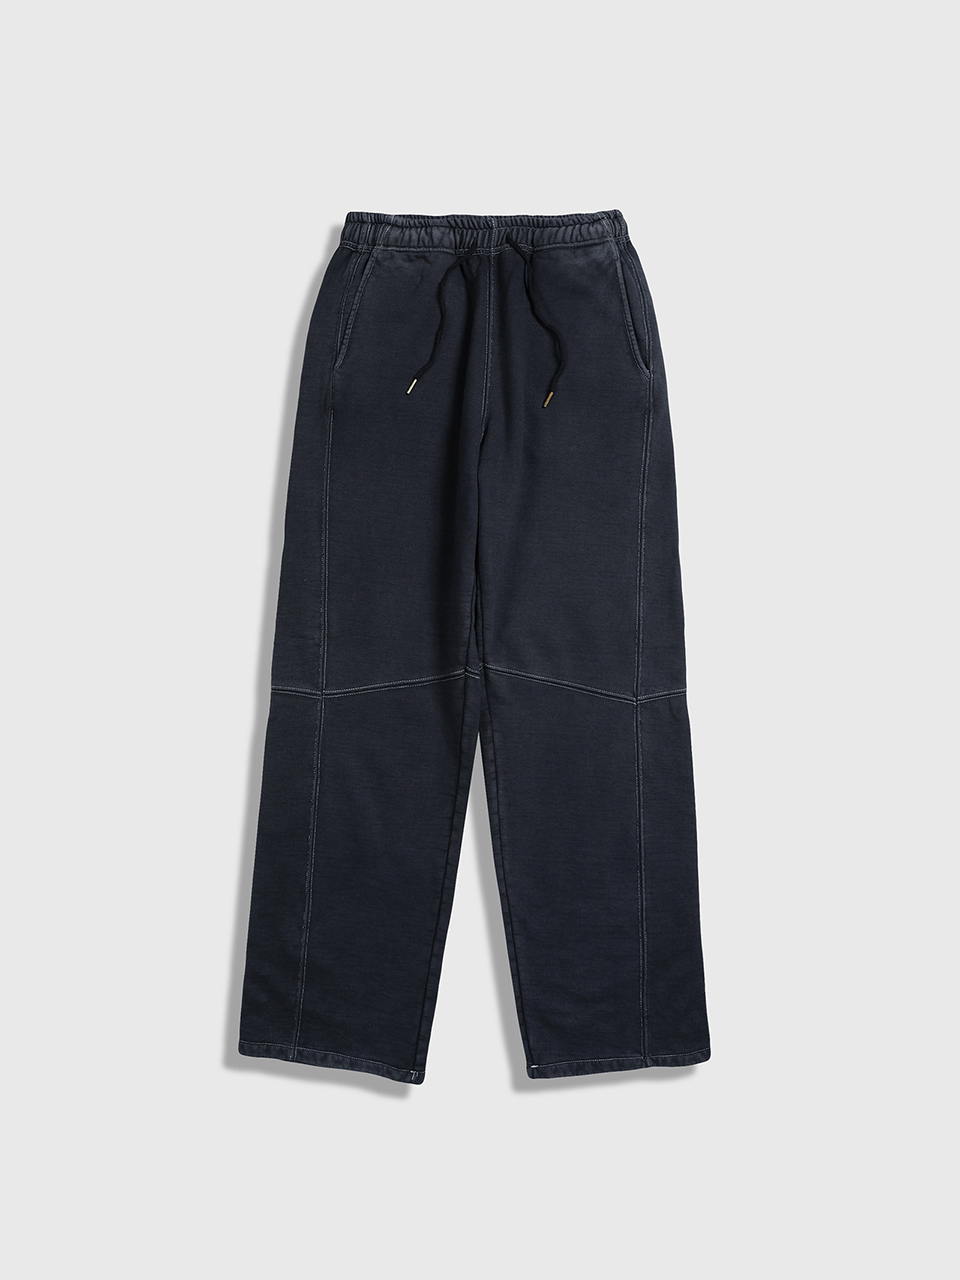 86D - Double Dyed Sweatpants (Black)